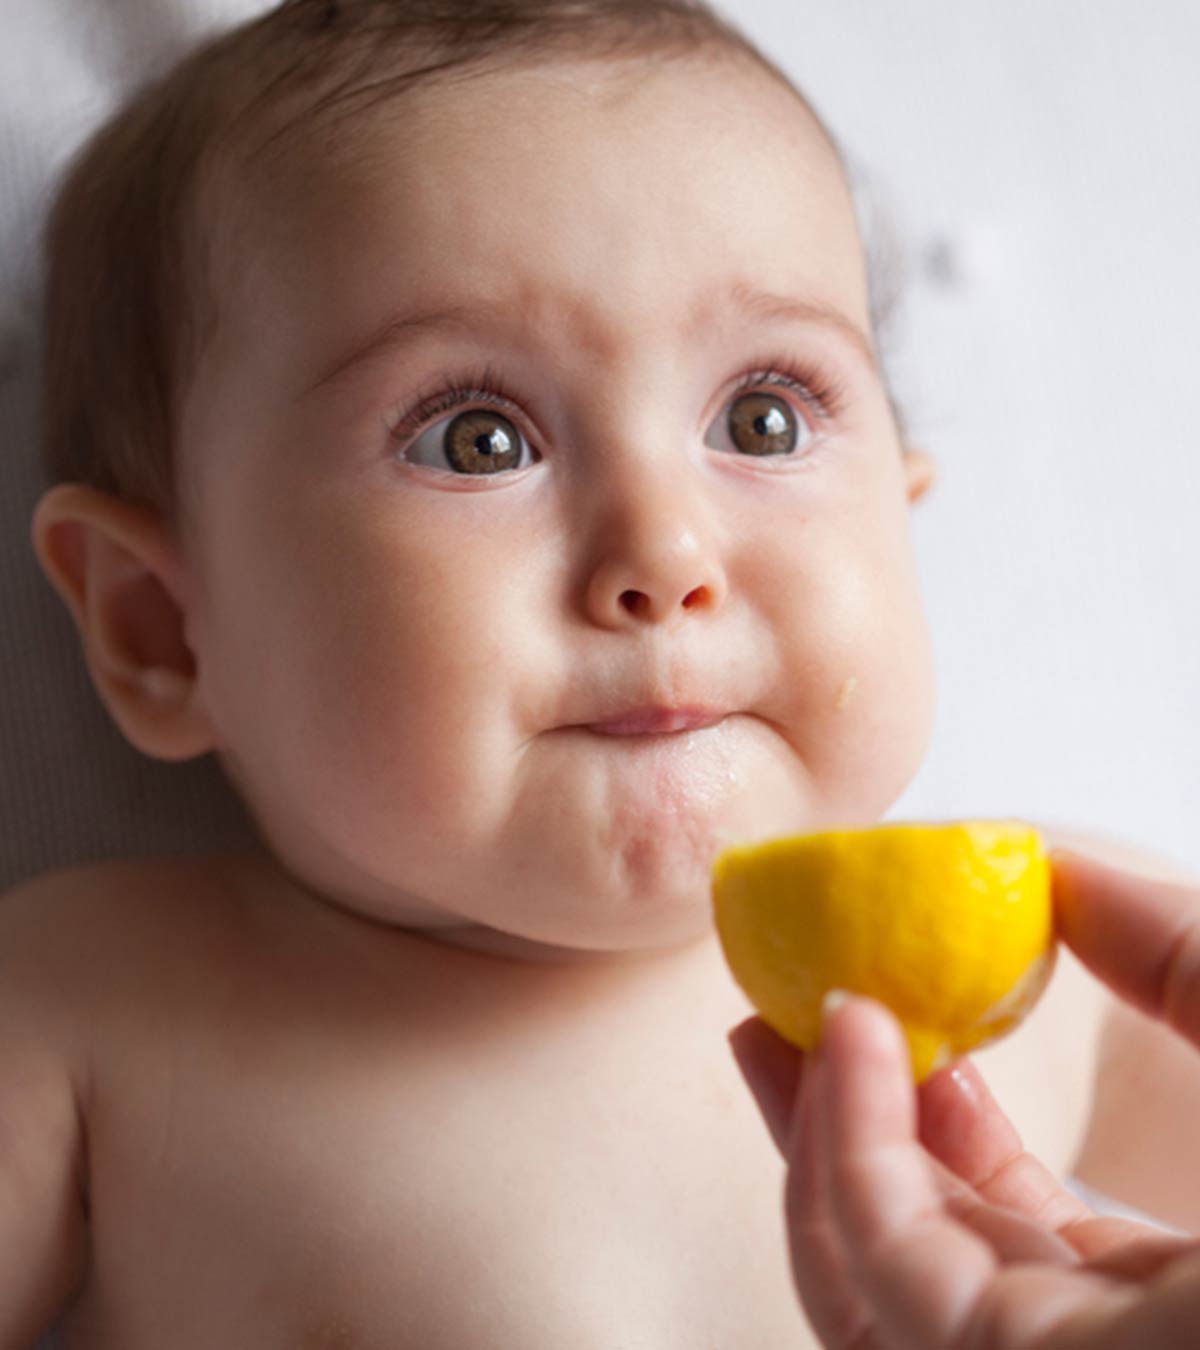 बच्चों को नींबू देना कब शुरू करें, फायदे व नुकसान | Lemon For Babies In Hindi